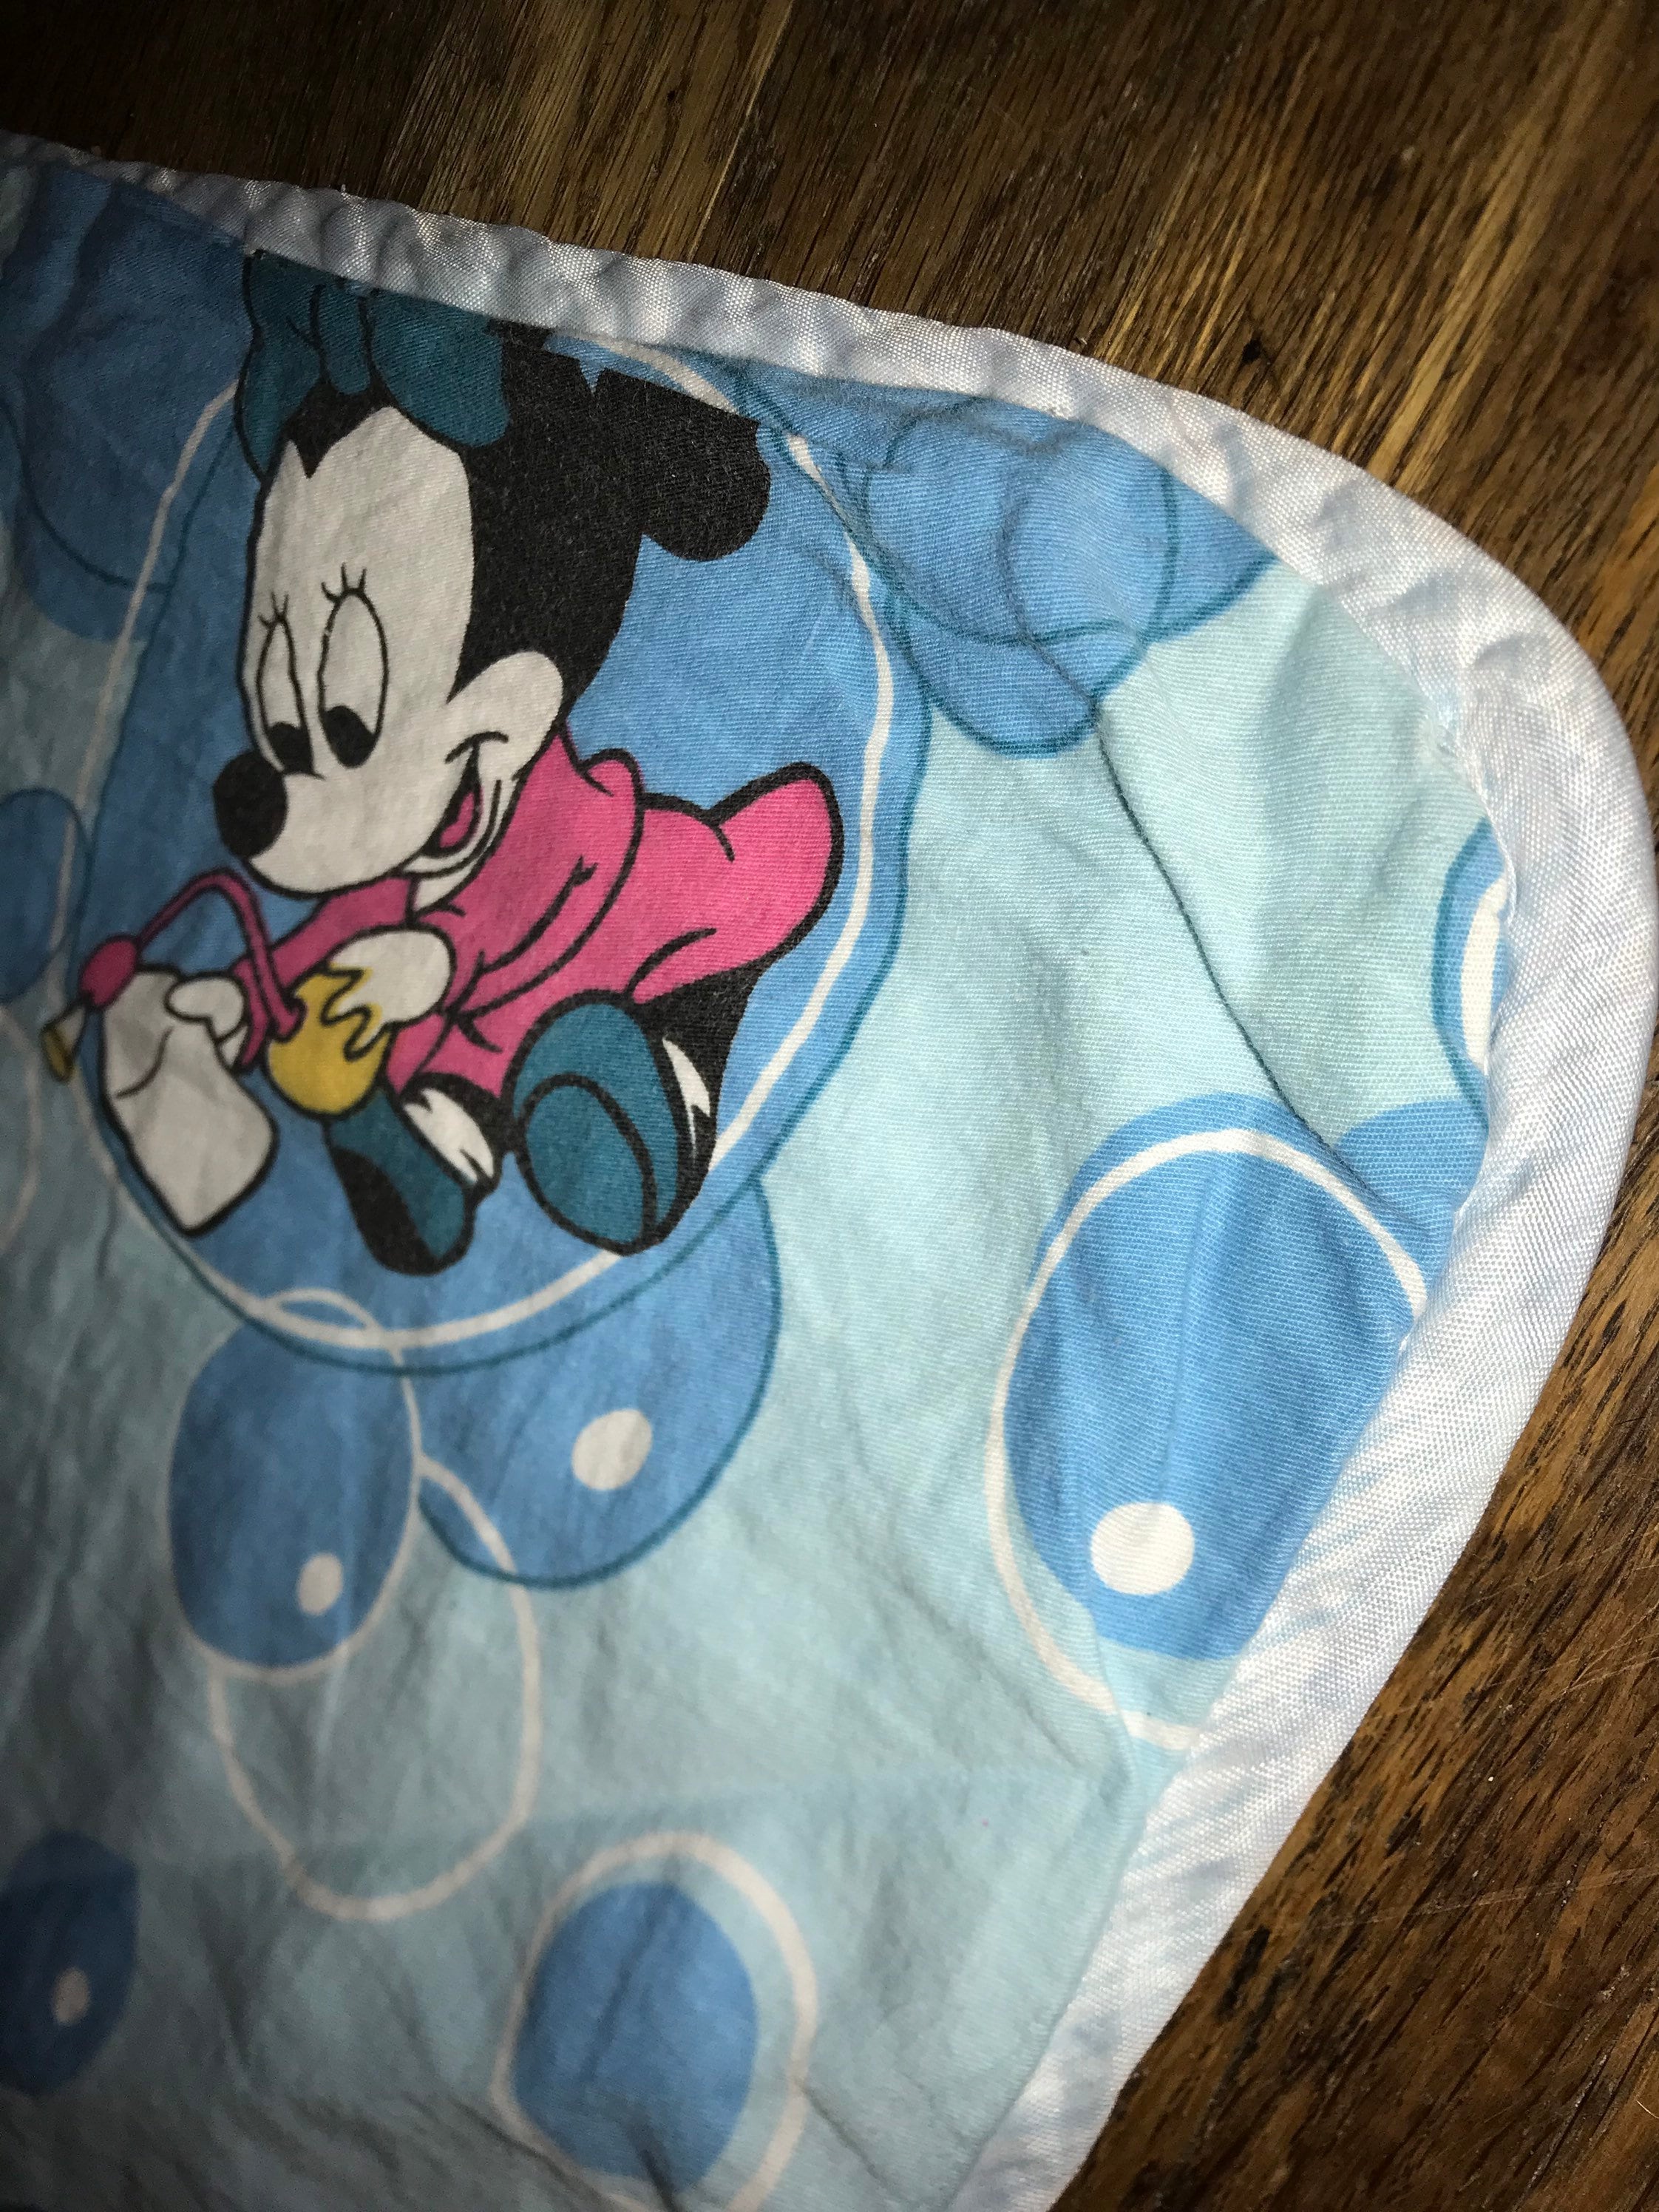 Couverture de rêves Disney 120 x 120 cm, couverture pour bébé - Le Trésor  de Bébé